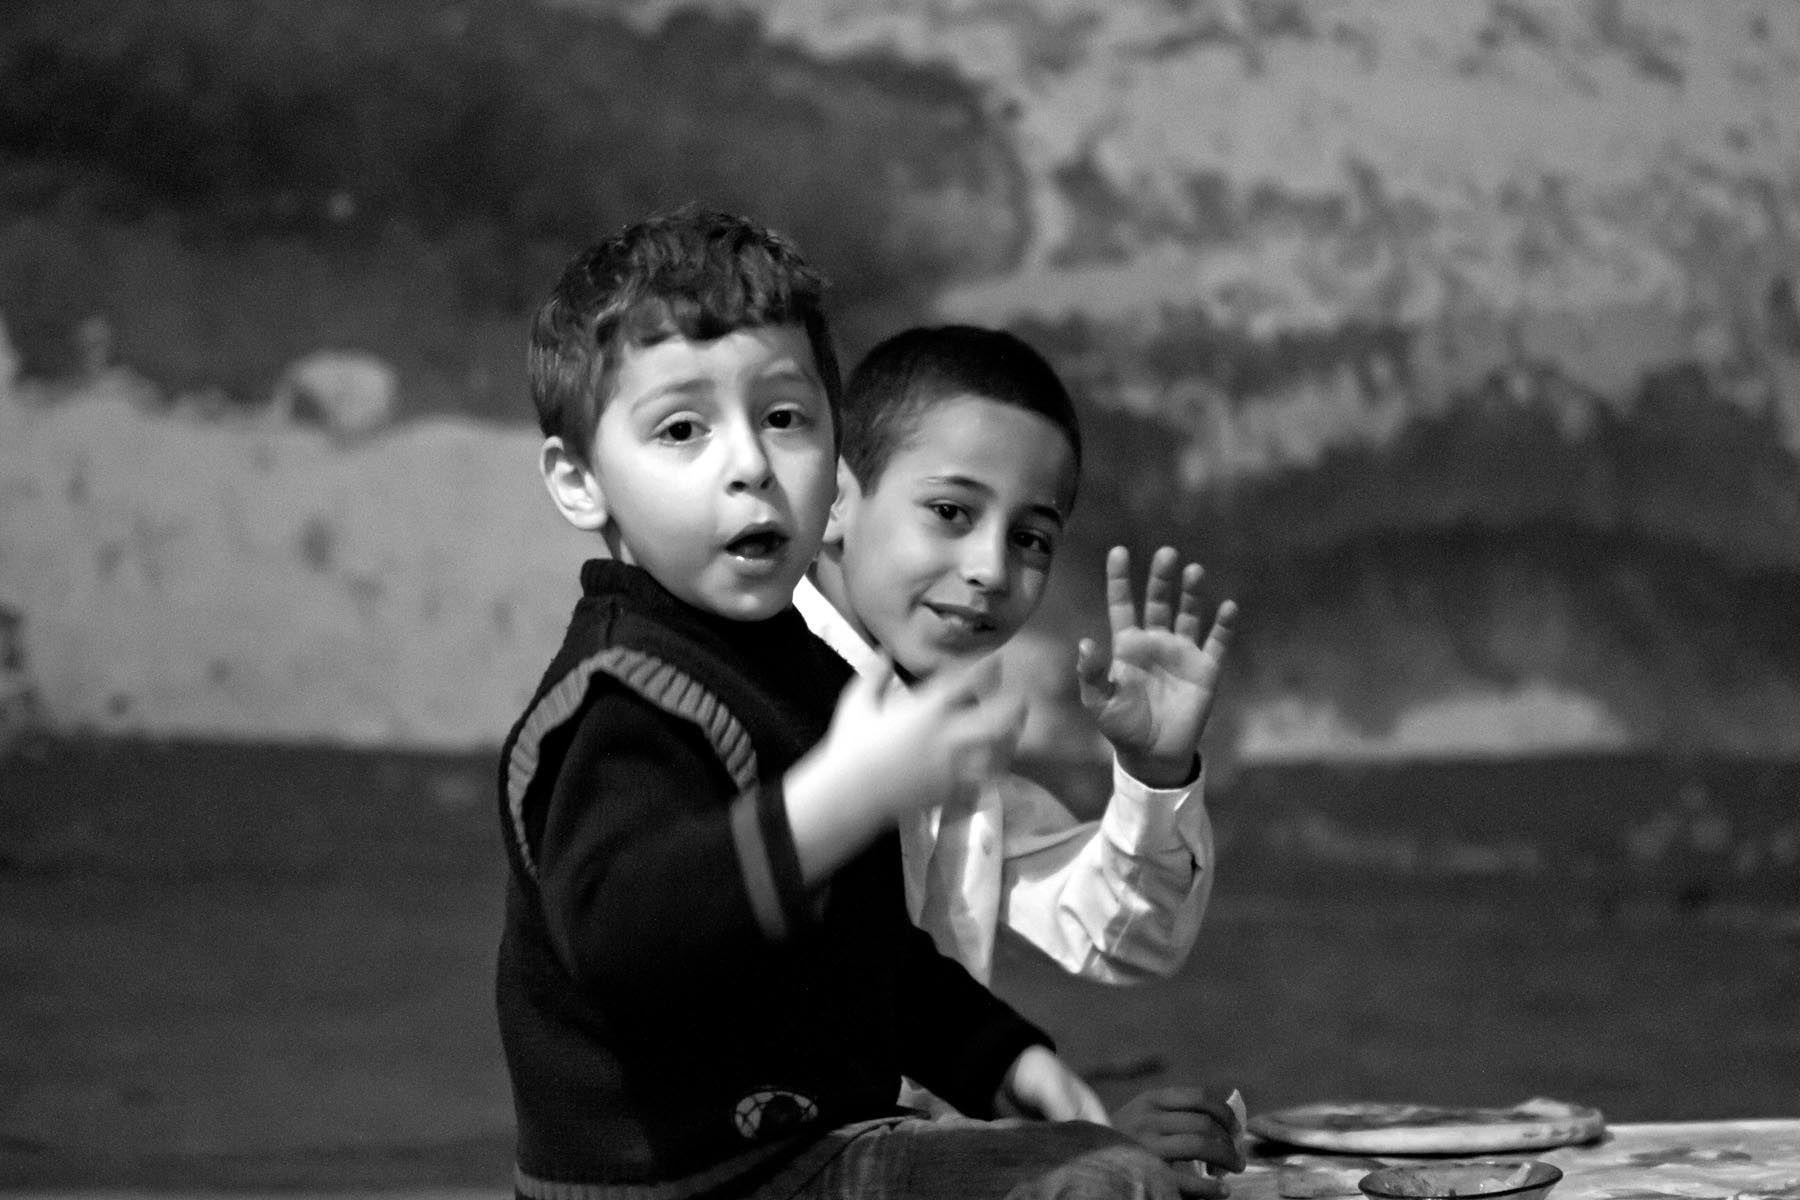 /Guewen/galeries/public/Voyages/Maroc/portraits/Marrakech/Portraits_aid_marrakech_087.jpg